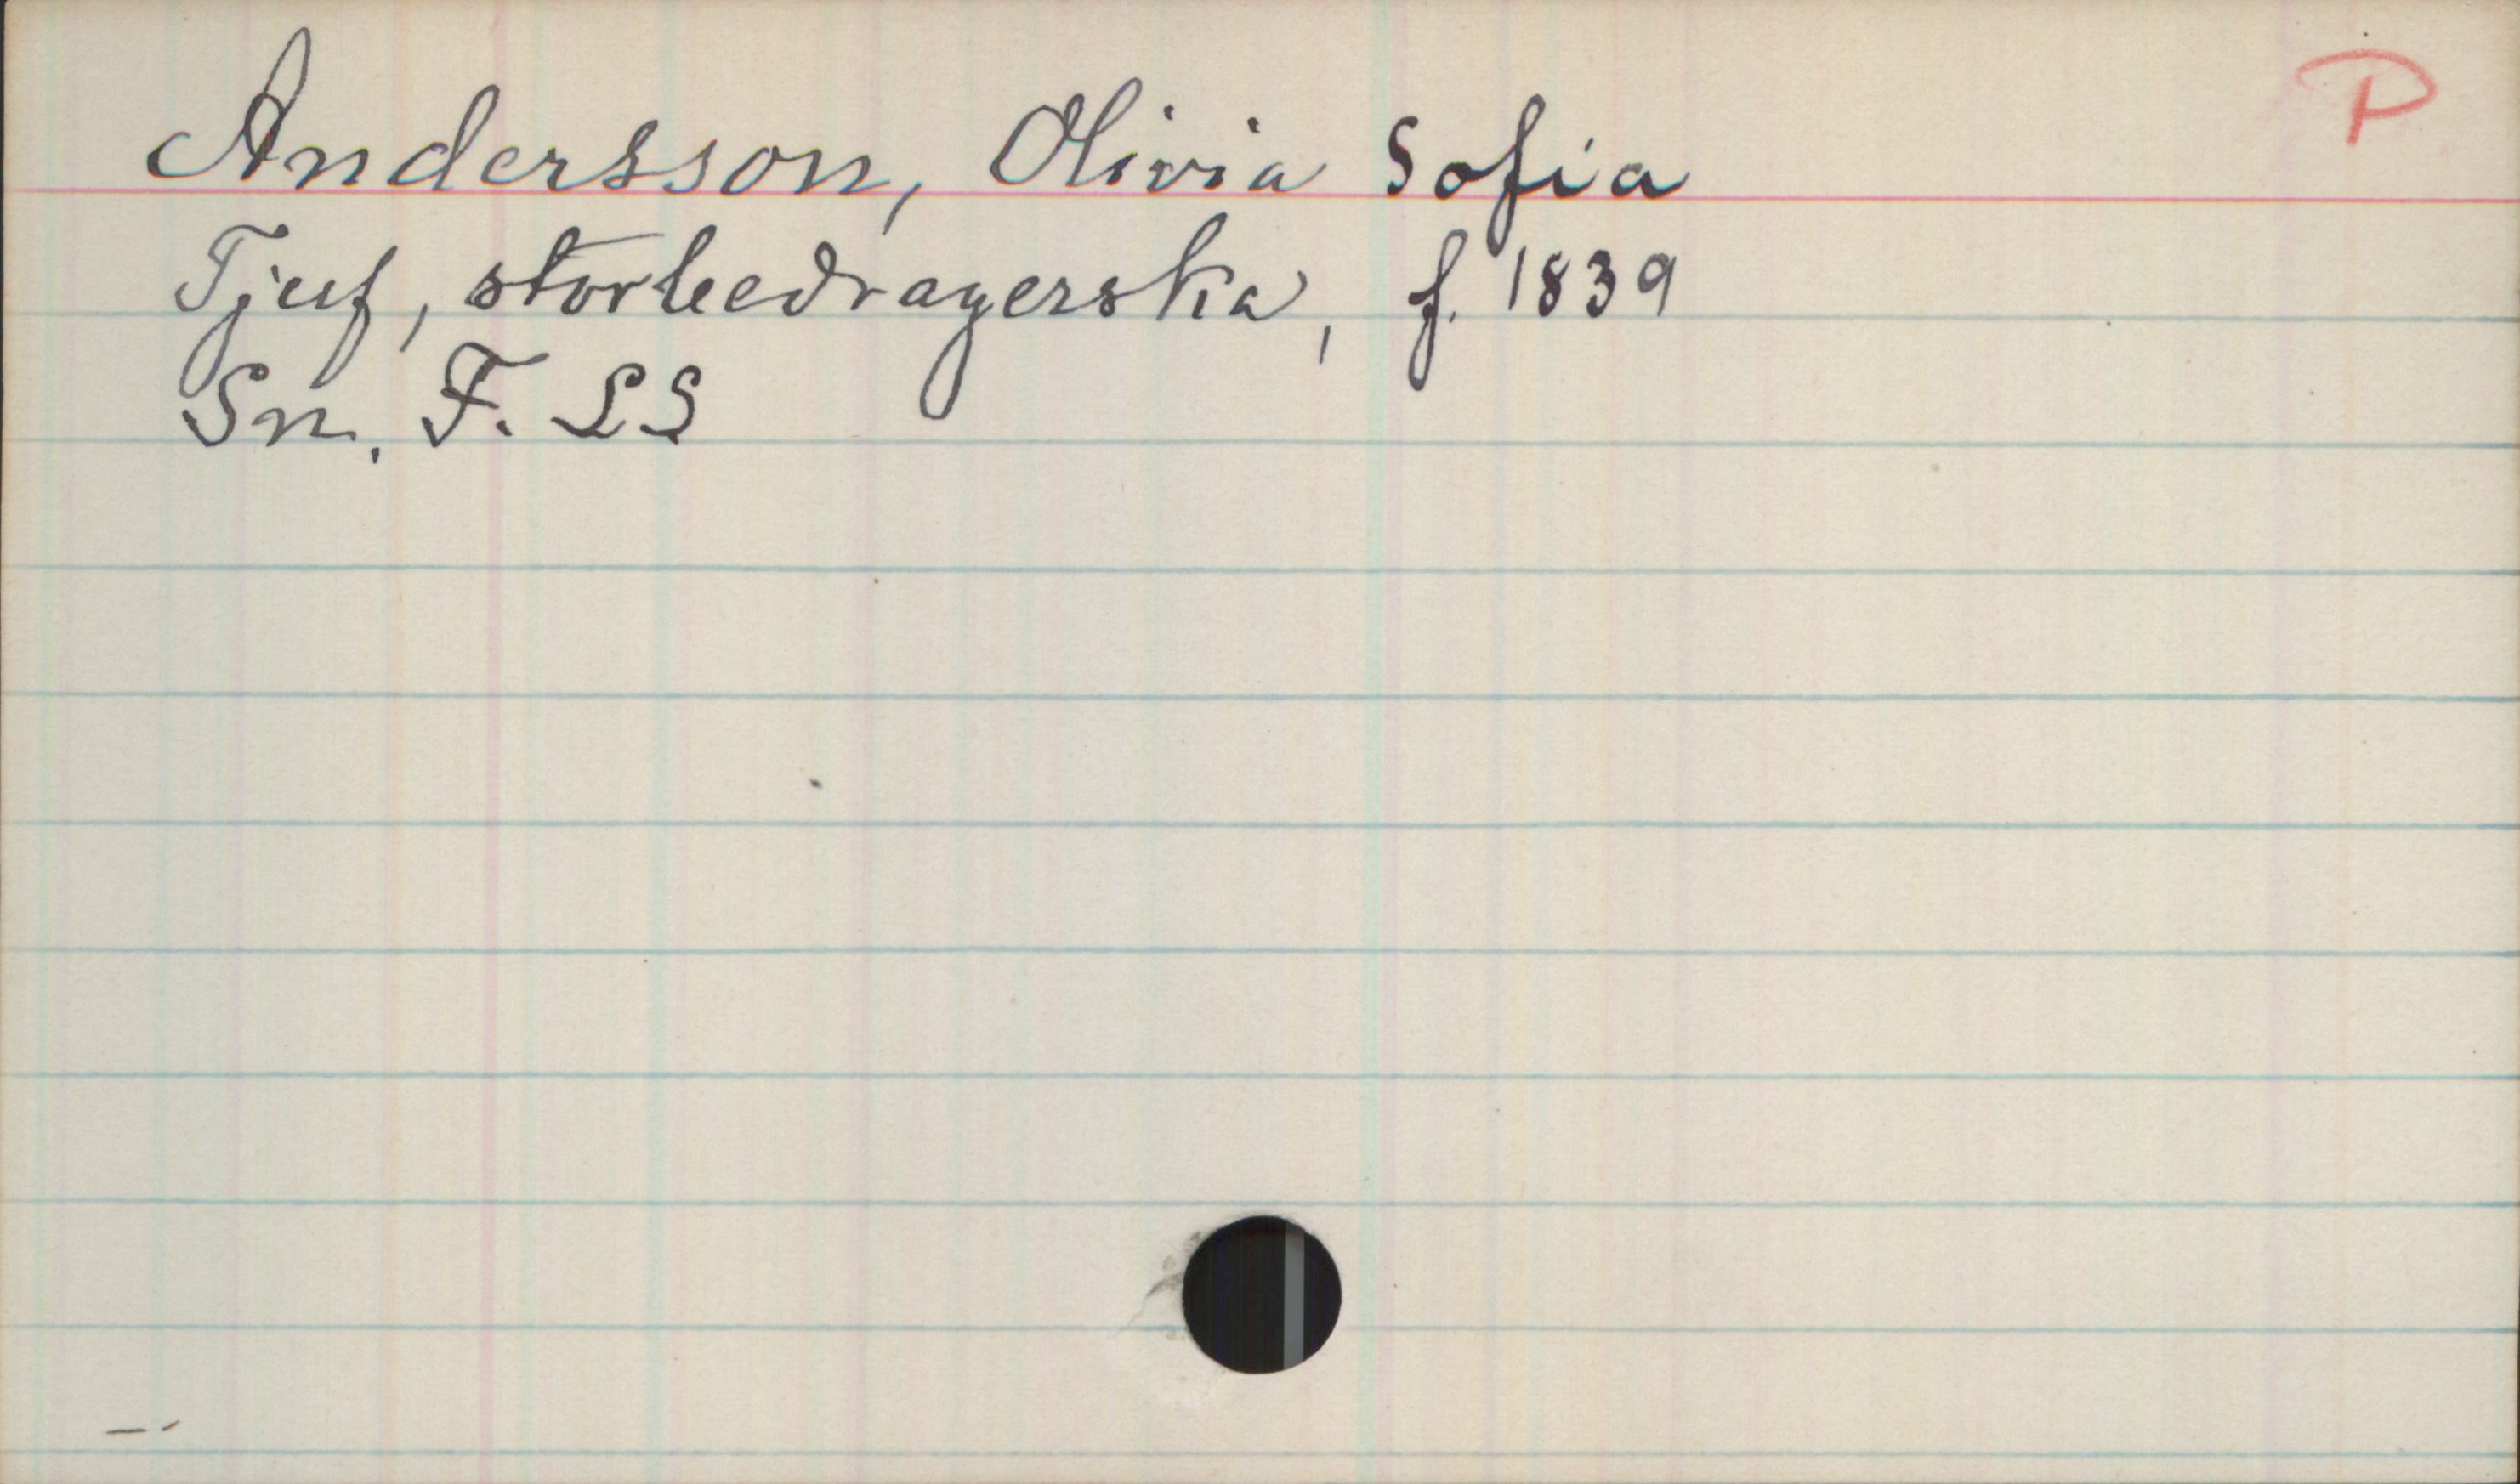 Andersson, Olivia Sofia. 1839- Andersson, Olivia Sofia
Tjuf, storbedragerska, f. 1839
Sn. F. LS.